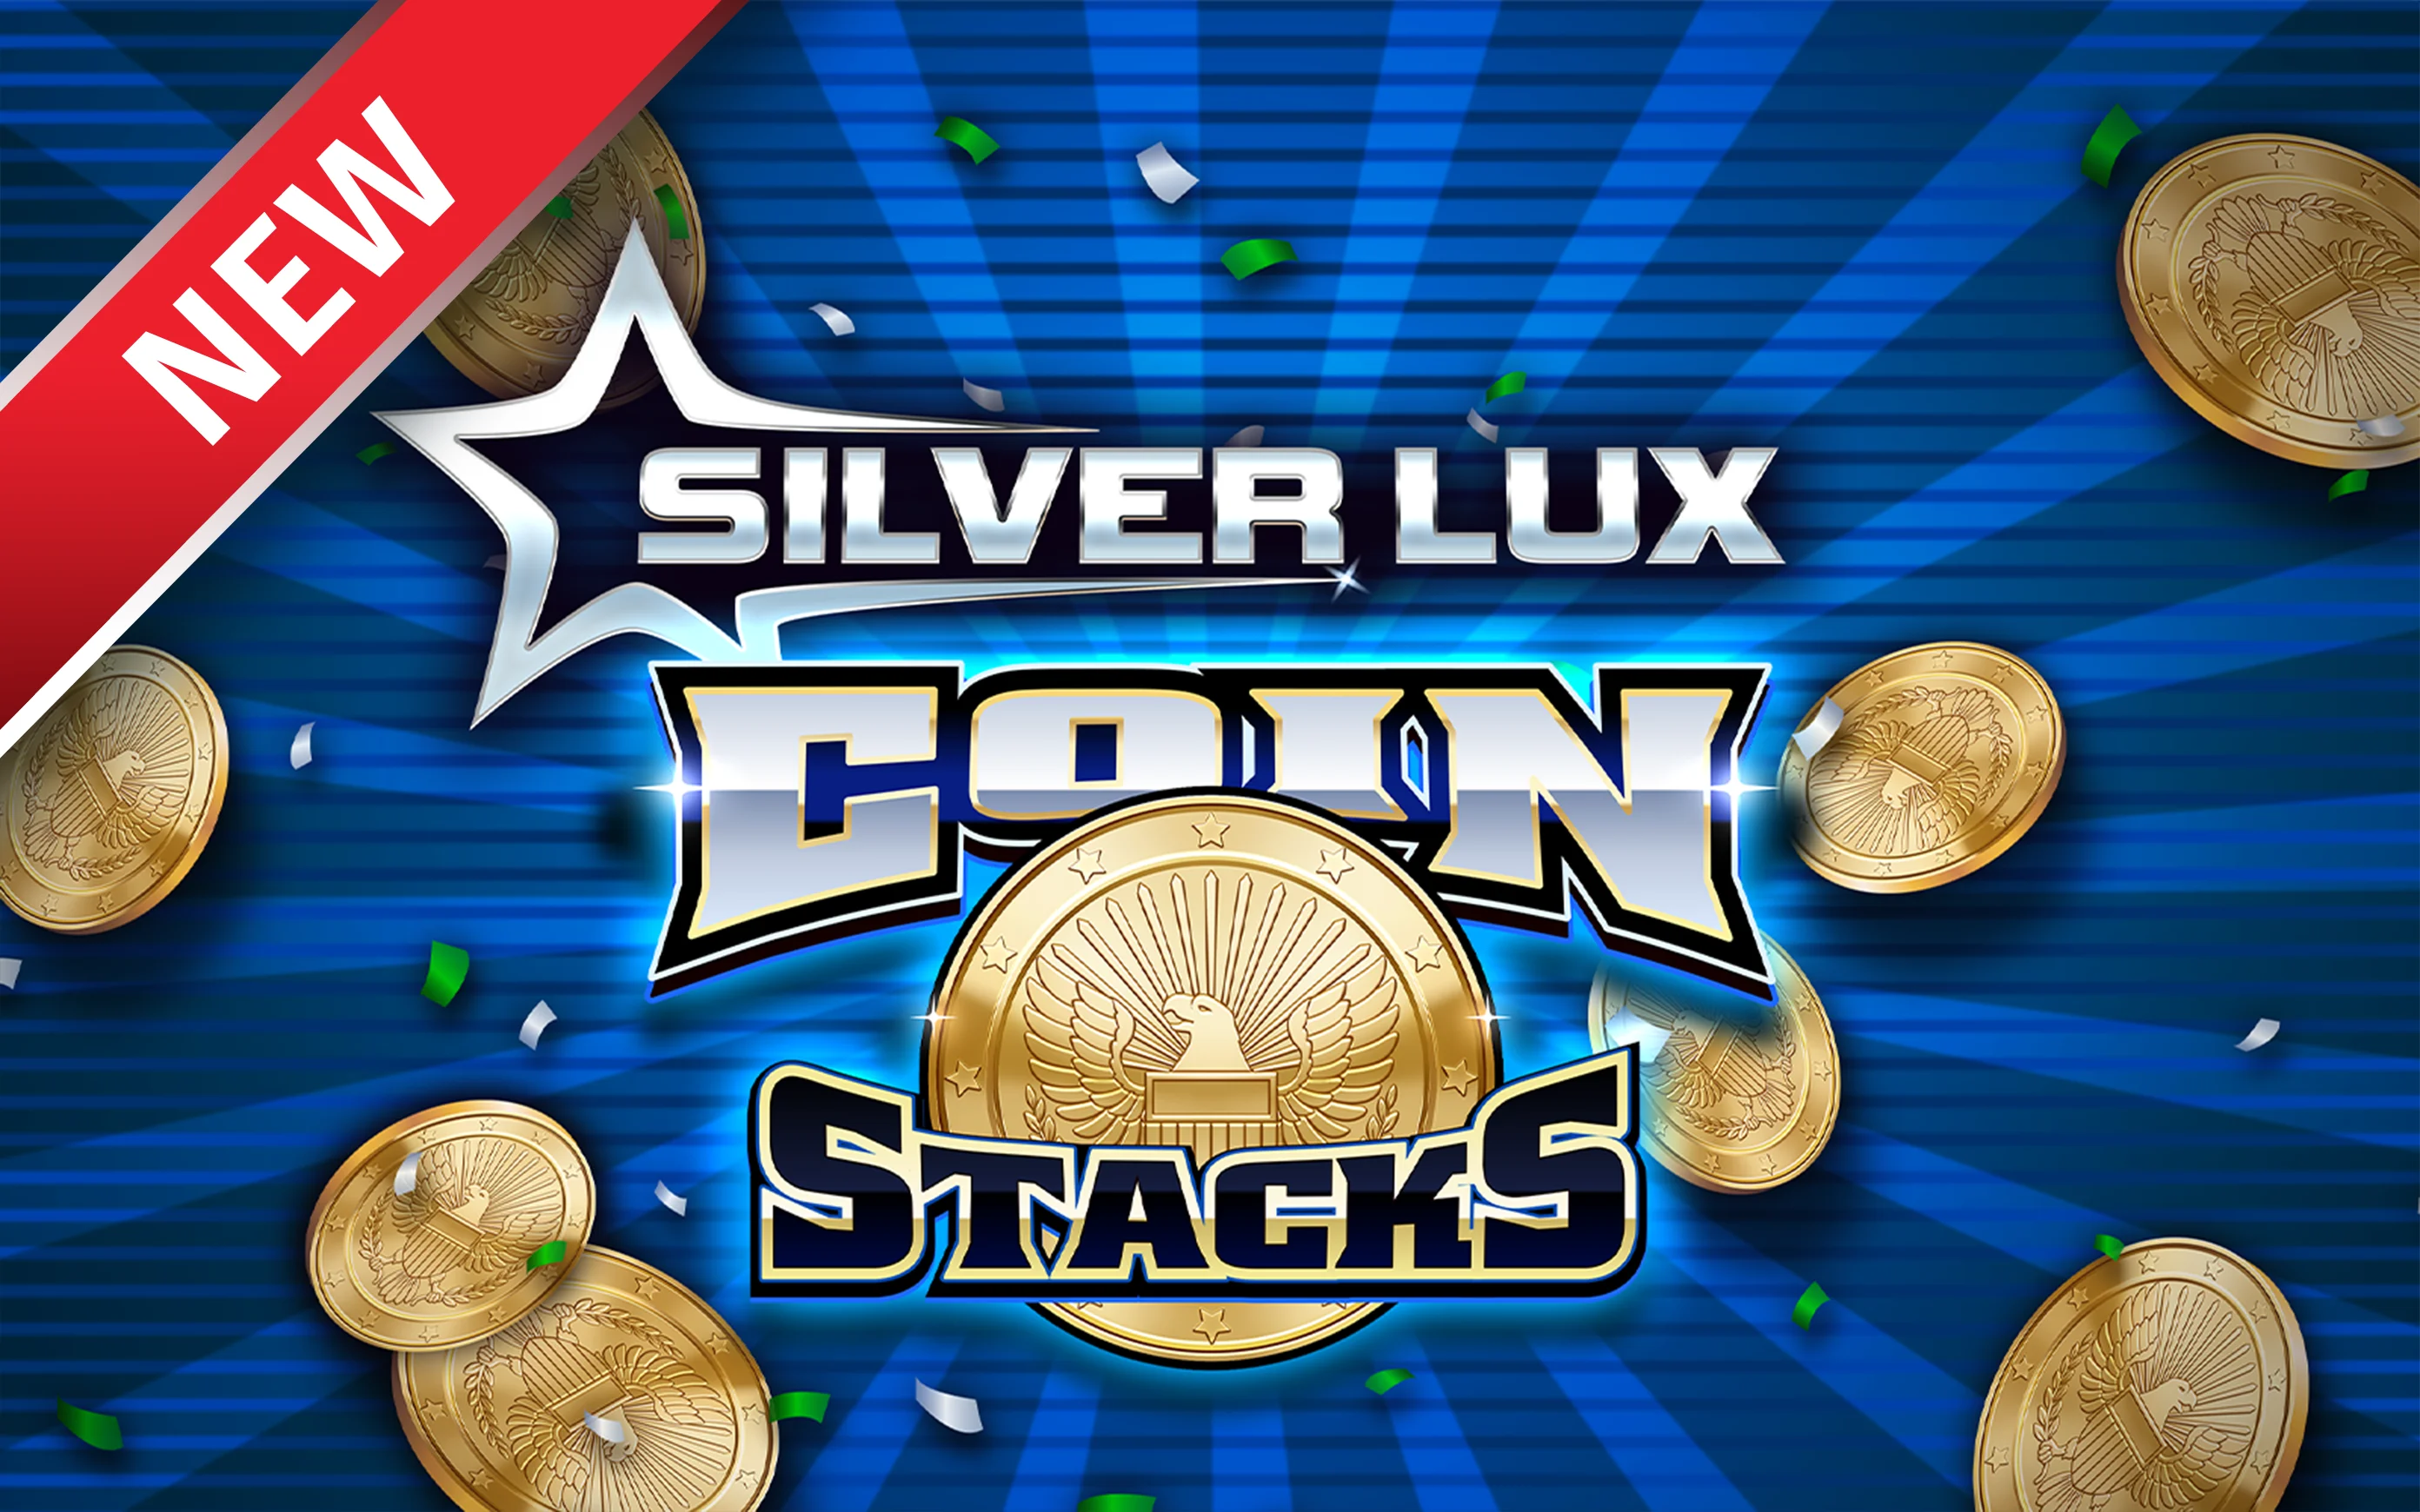 Gioca a Silver Lux – Coin Stacks sul casino online Starcasino.be